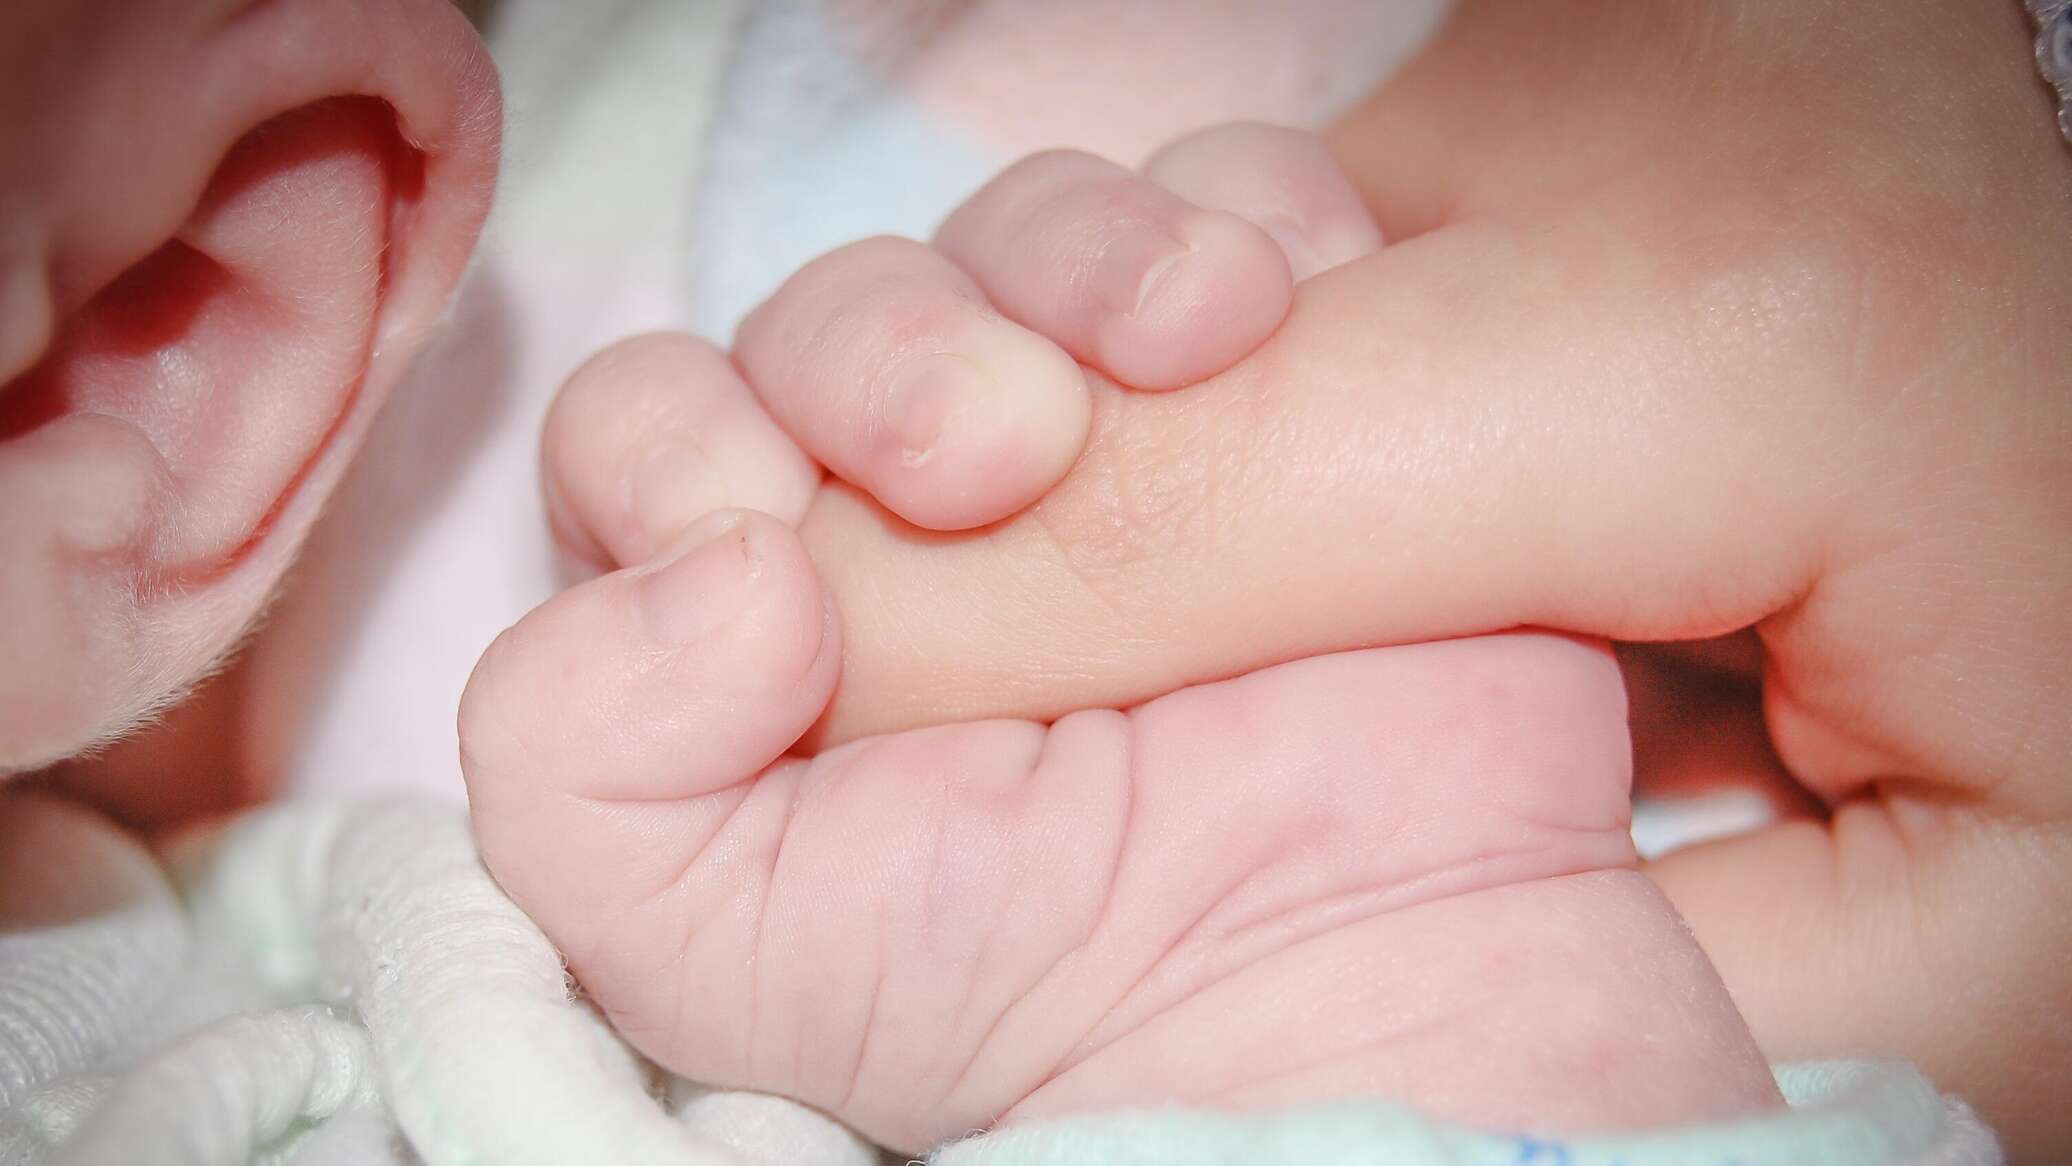 دراسة: الوعي لدى الإنسان يبدأ في مرحلة ما قبل الولادة